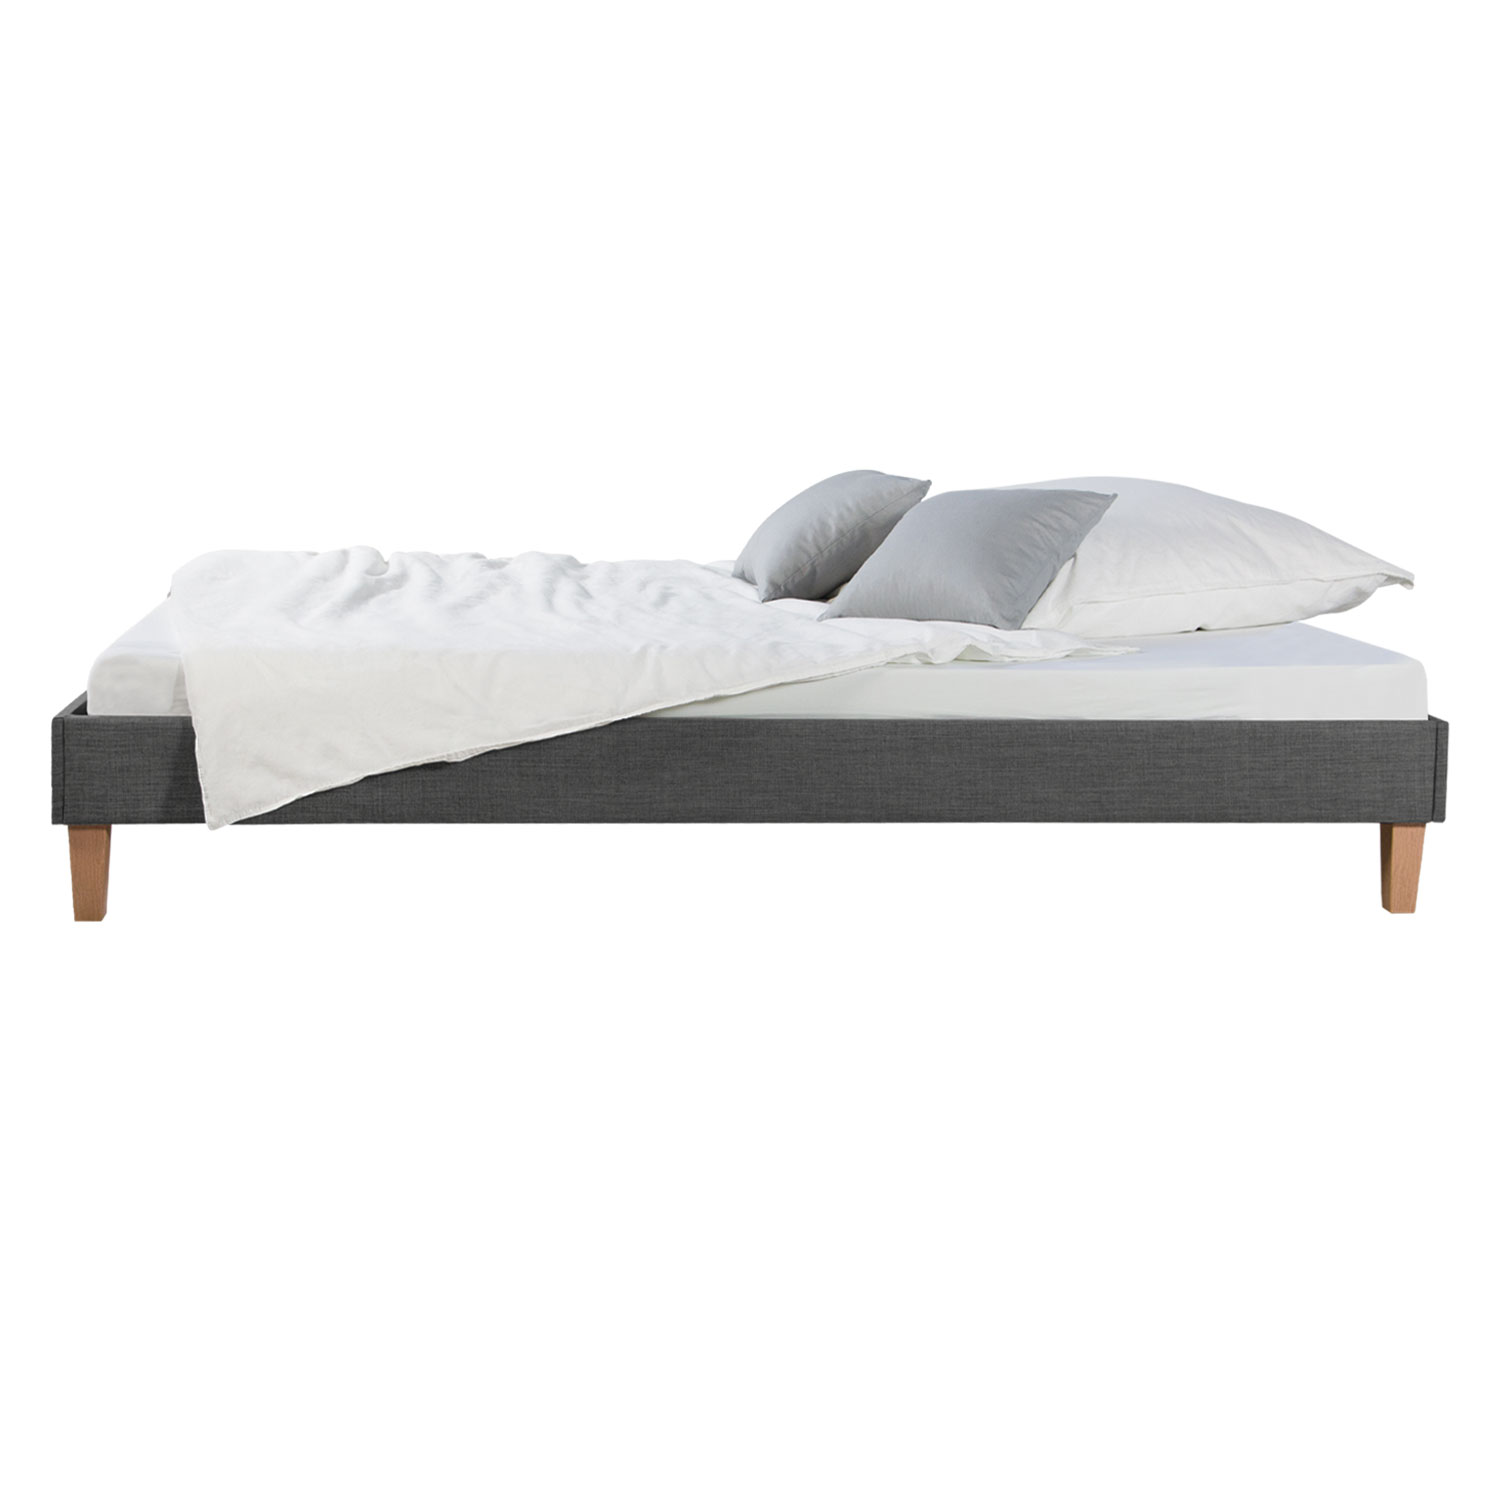 Upholstered Bed 90 120 140 160 180 x 200 cm Grey Futon Bed Frame Slatted Frame